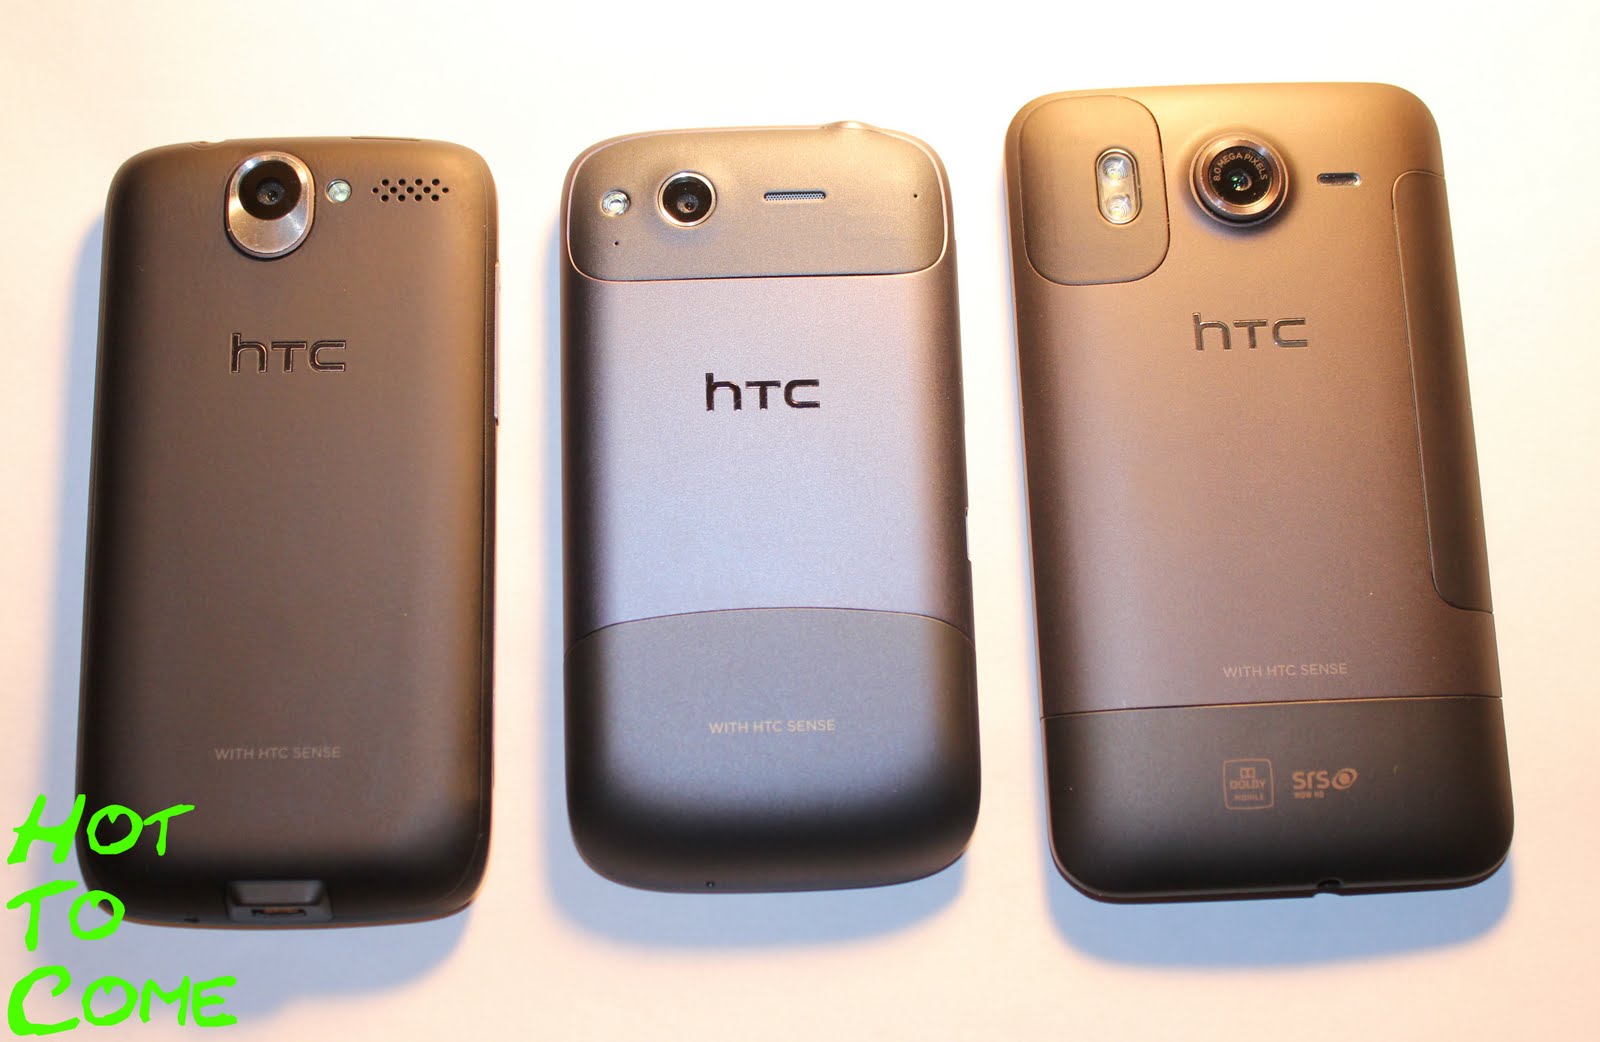 De gauche à droite : HTC Desire - HTC Desire S - HTC Desire HD